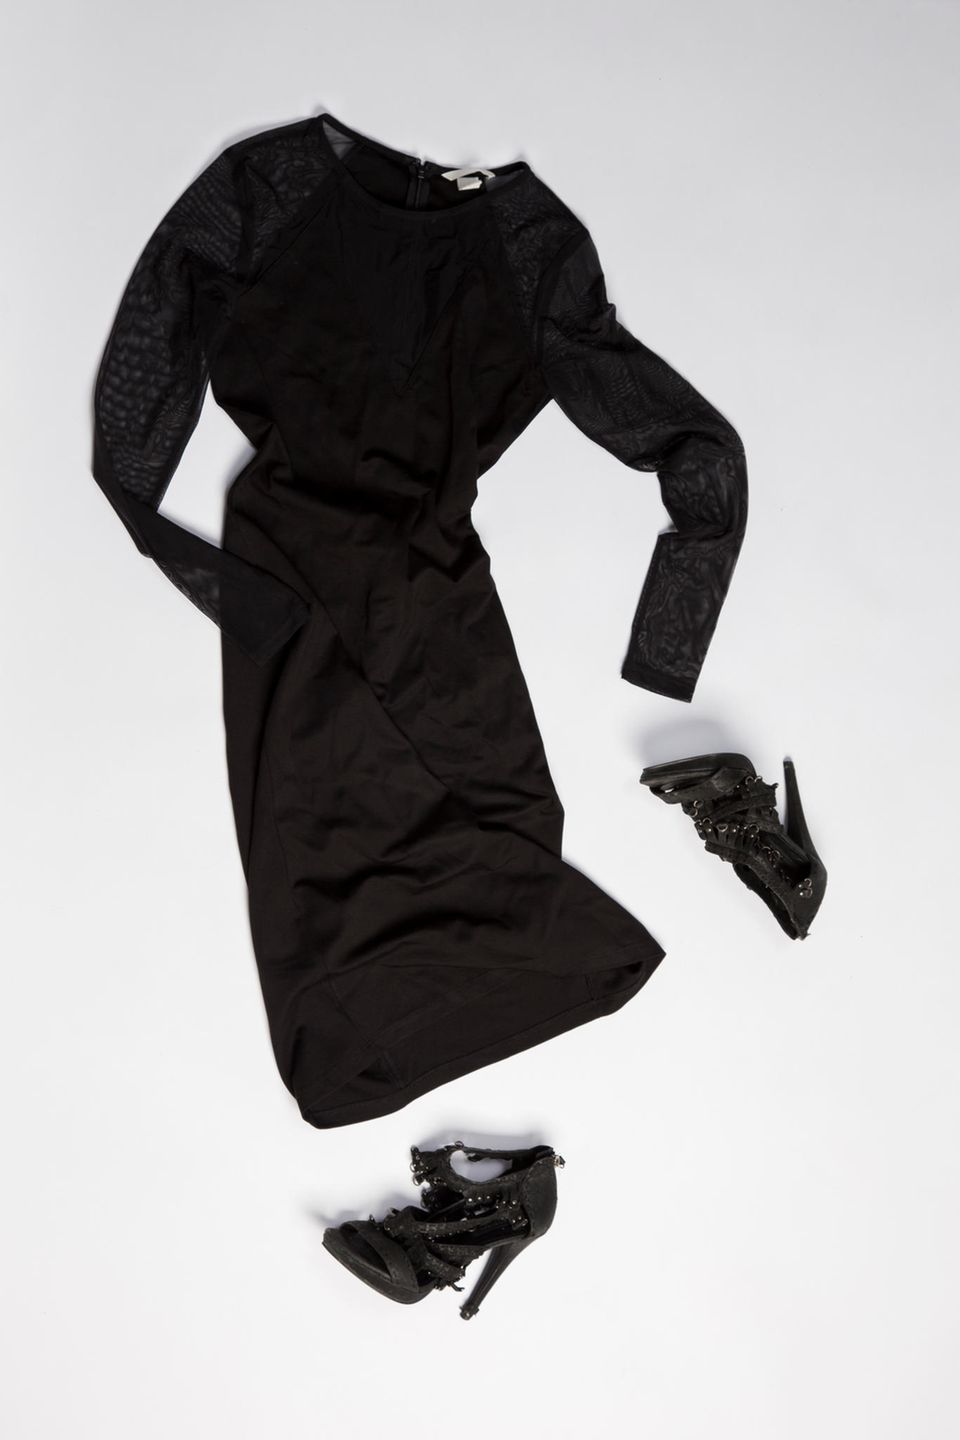 Ausstellung: schwarzes Kleid mit Schuhen